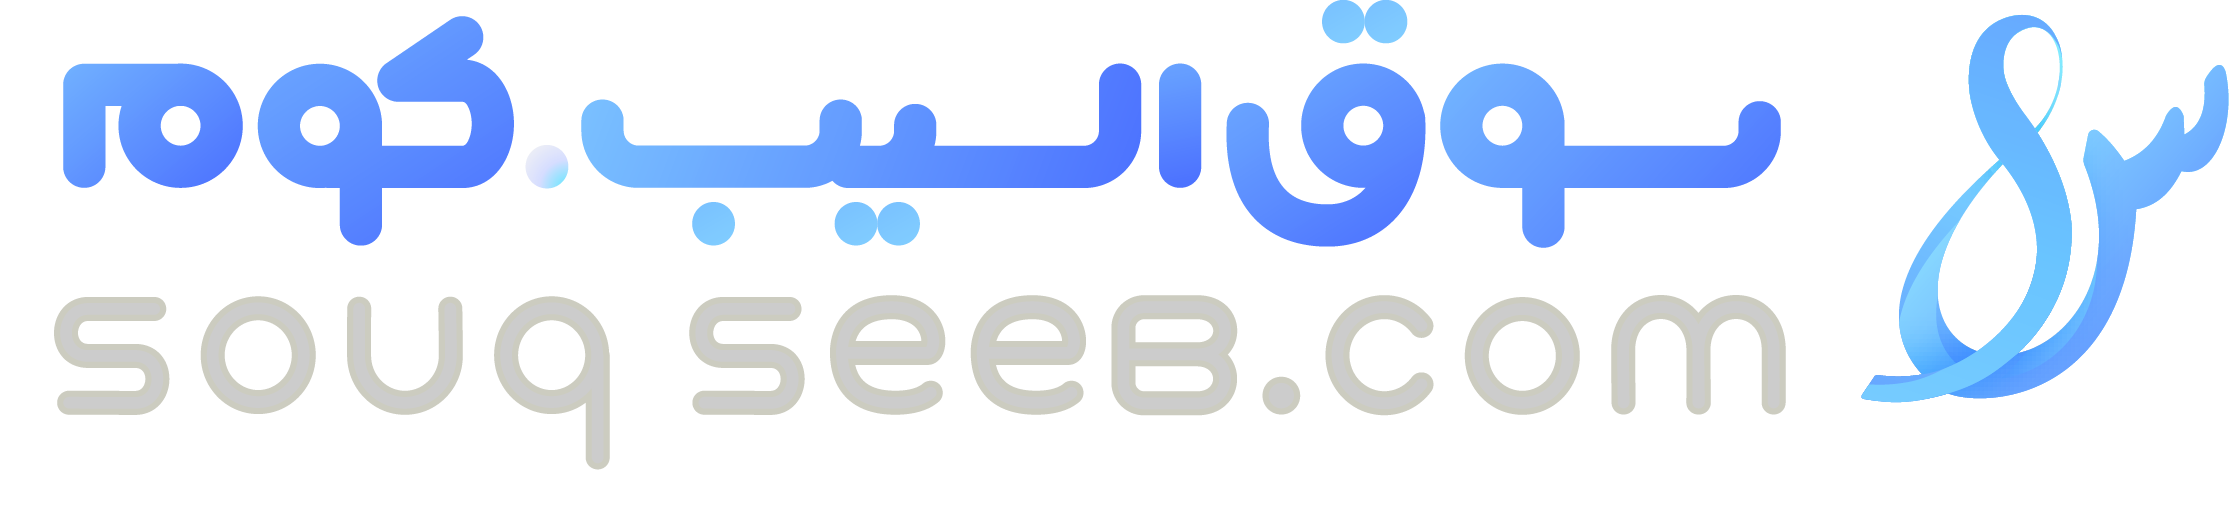 souqseeb.com